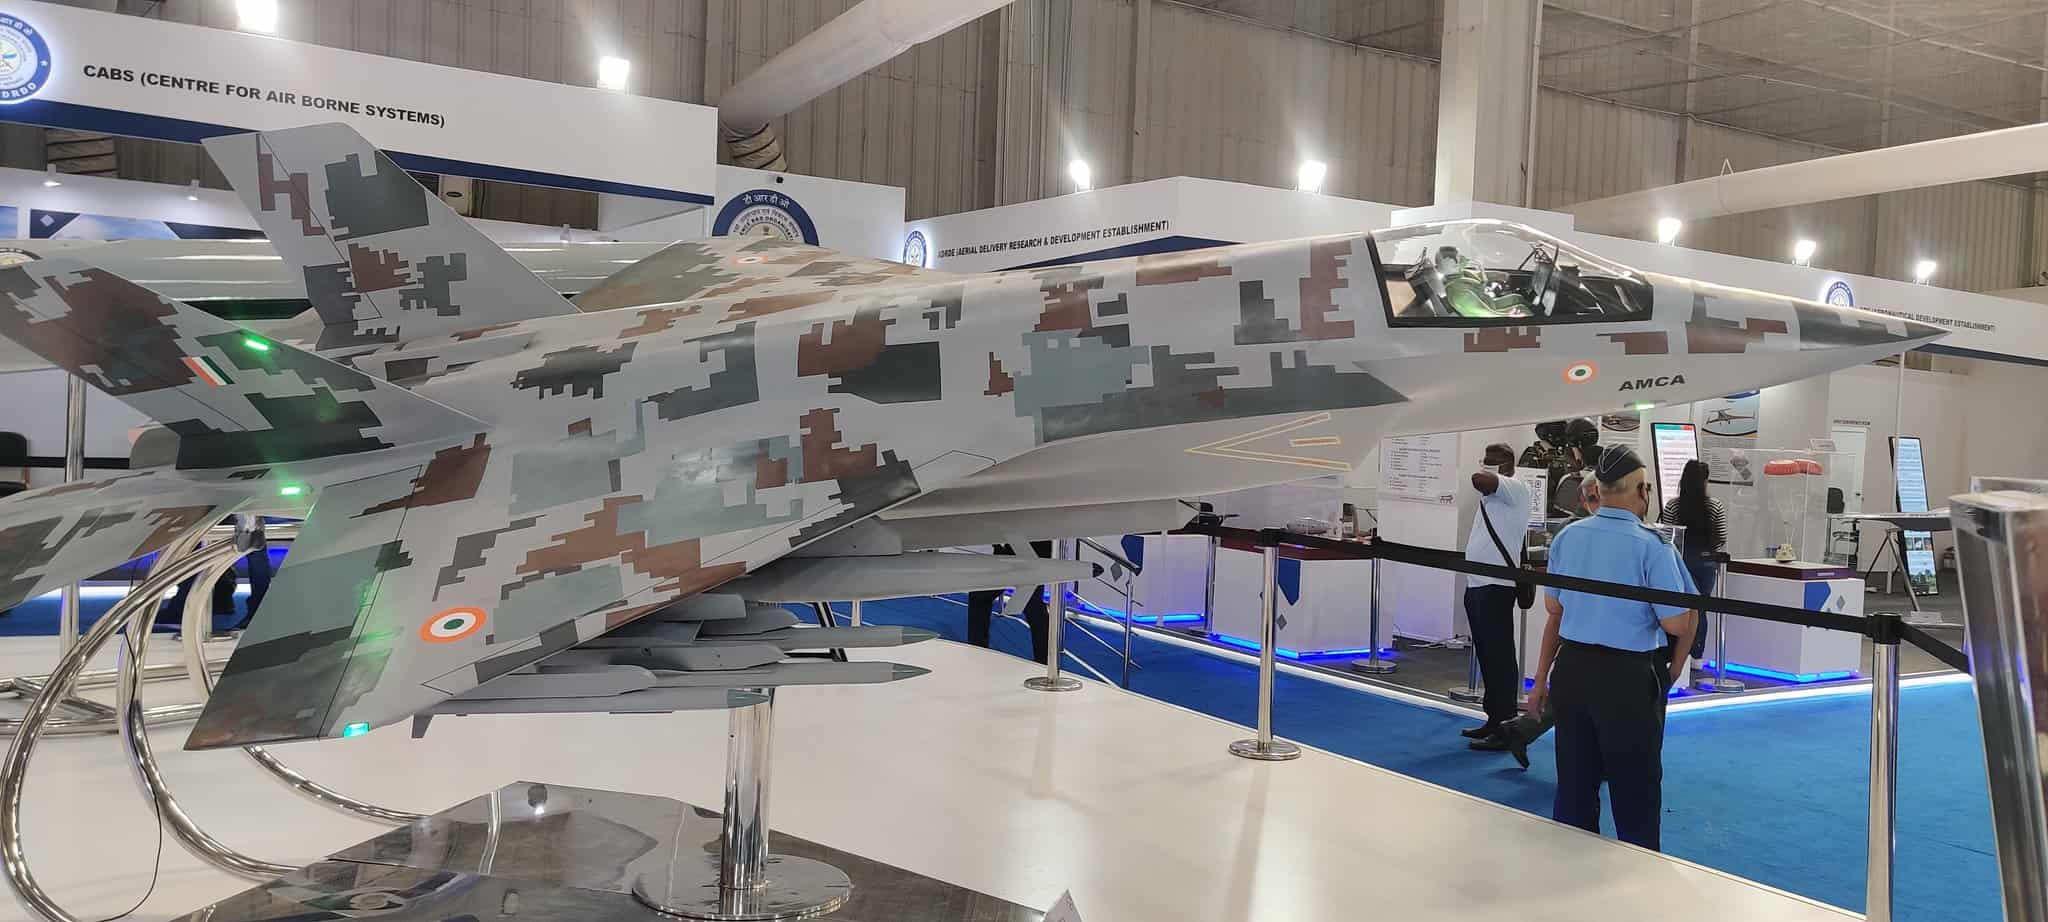 Модель бойового літака AMCA для Повітряних сил Індії на виставці. Фото: timesofindia.indiatimes.com